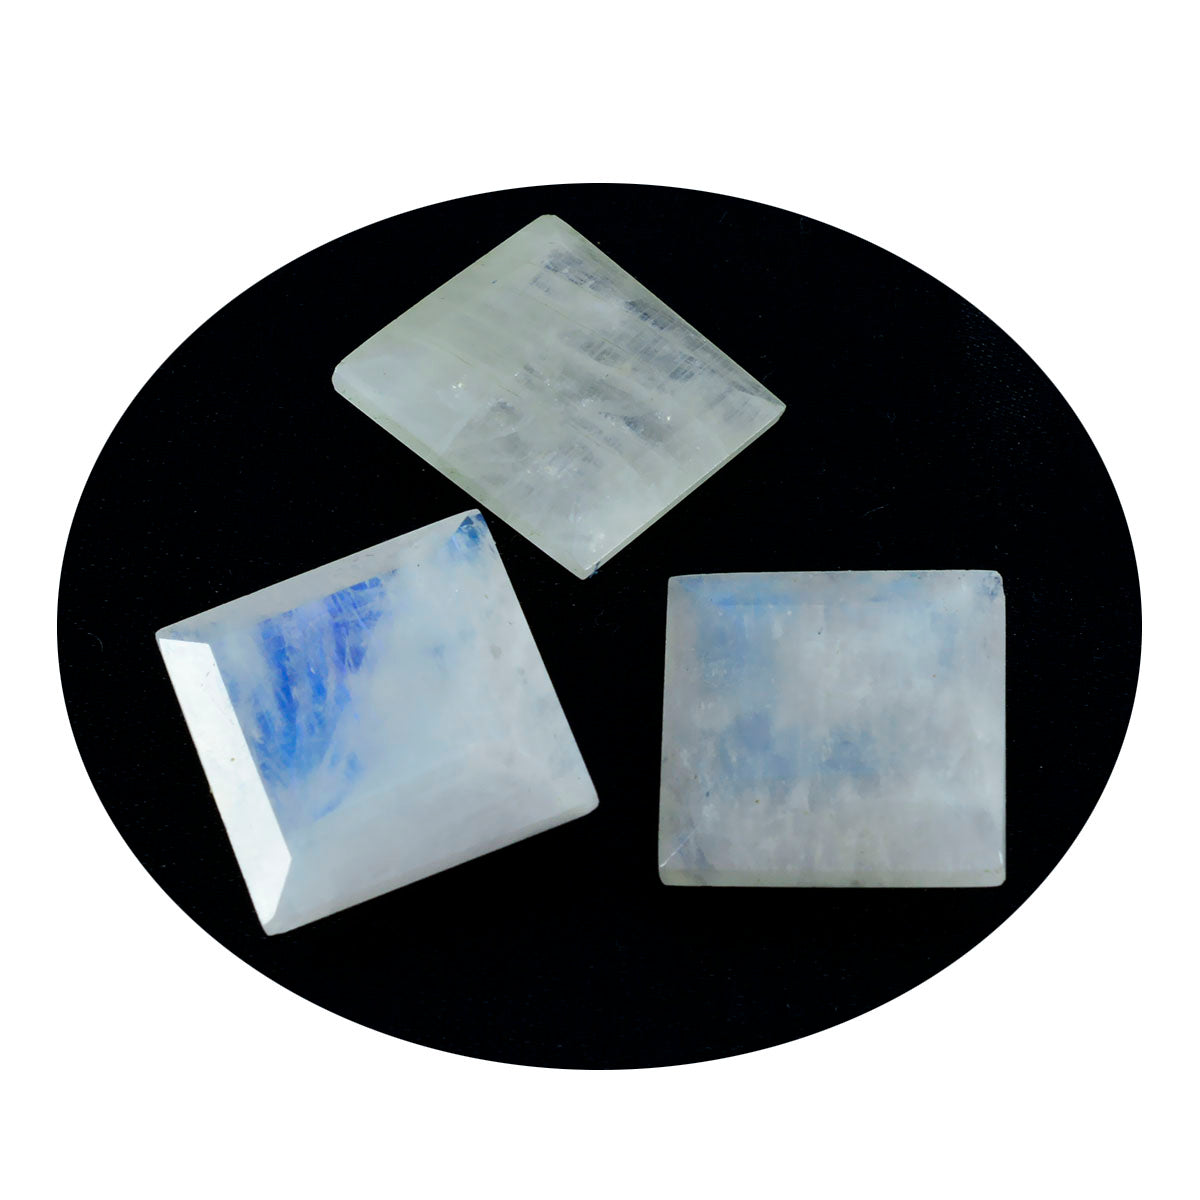 Riyogems 1 Stück weißer Regenbogen-Mondstein, facettiert, 15 x 15 mm, quadratische Form, Edelstein von ausgezeichneter Qualität